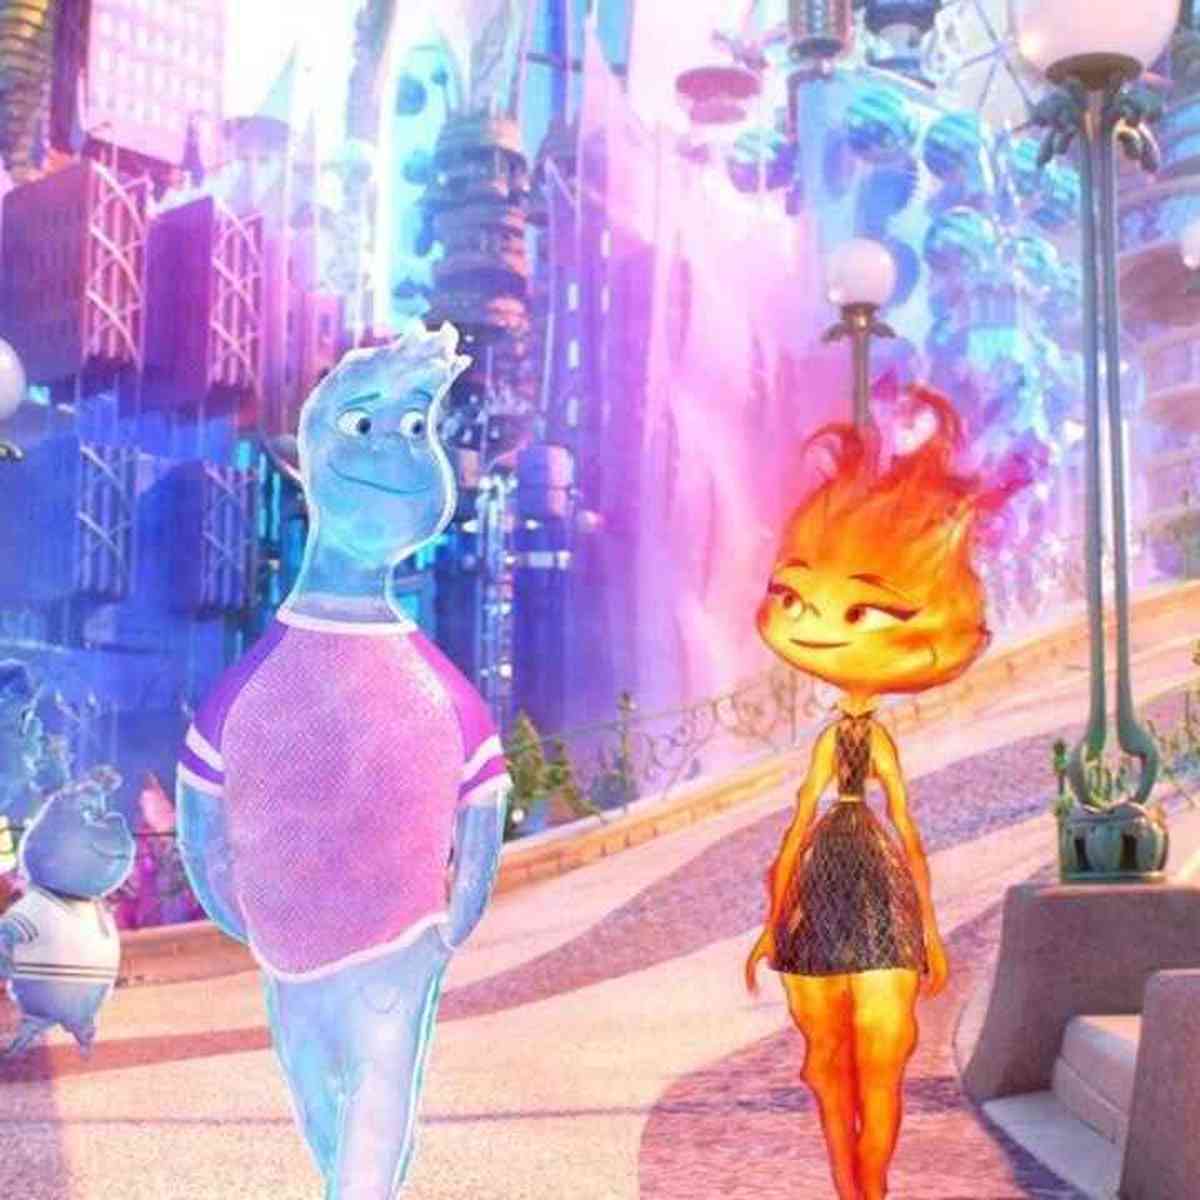 Pixar lança trailer de 'Elementos', animação sobre amor entre